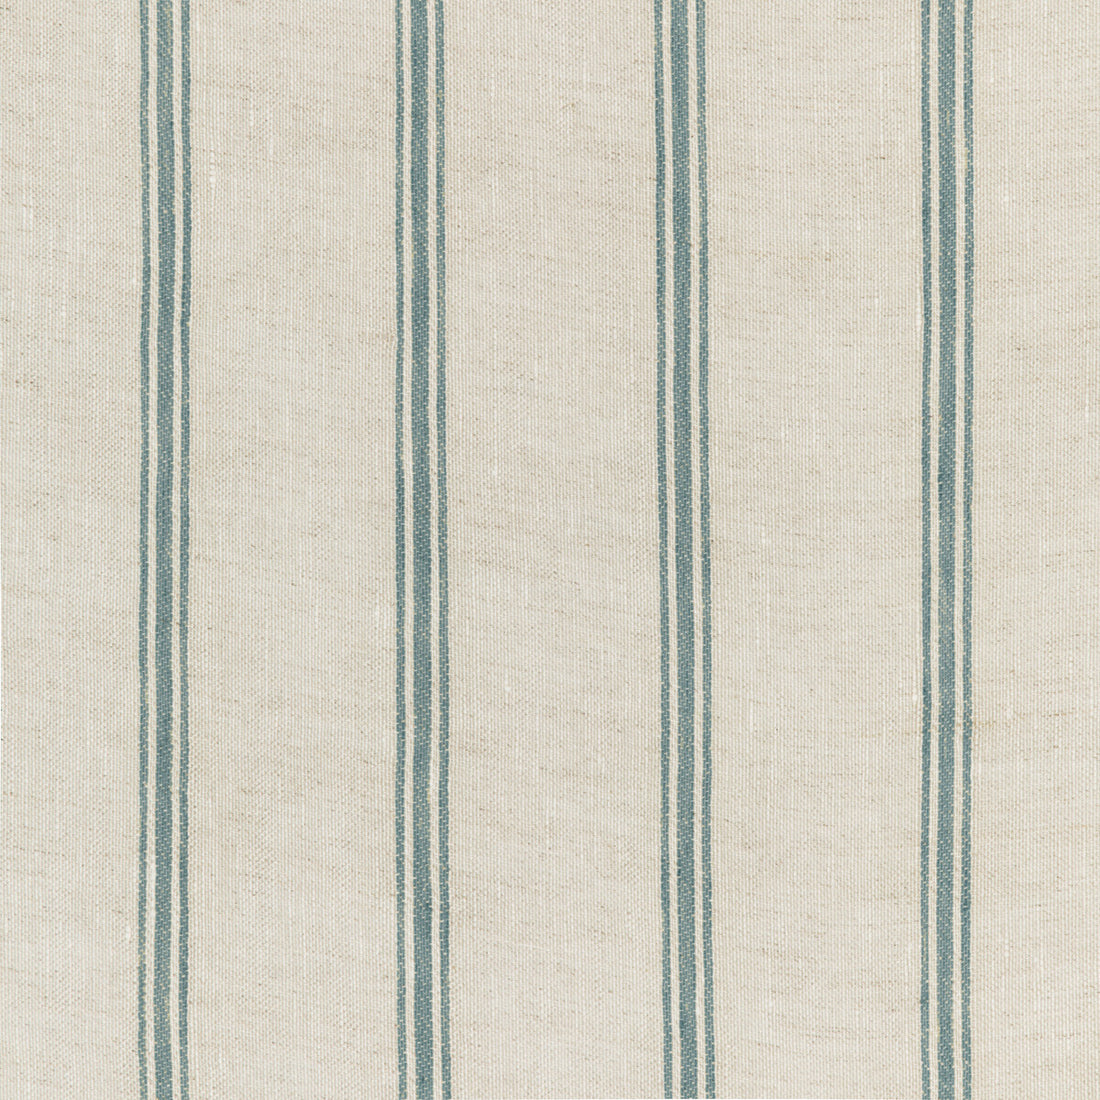 Kravet Design fabric in 4848-1635 color - pattern 4848.1635.0 - by Kravet Design